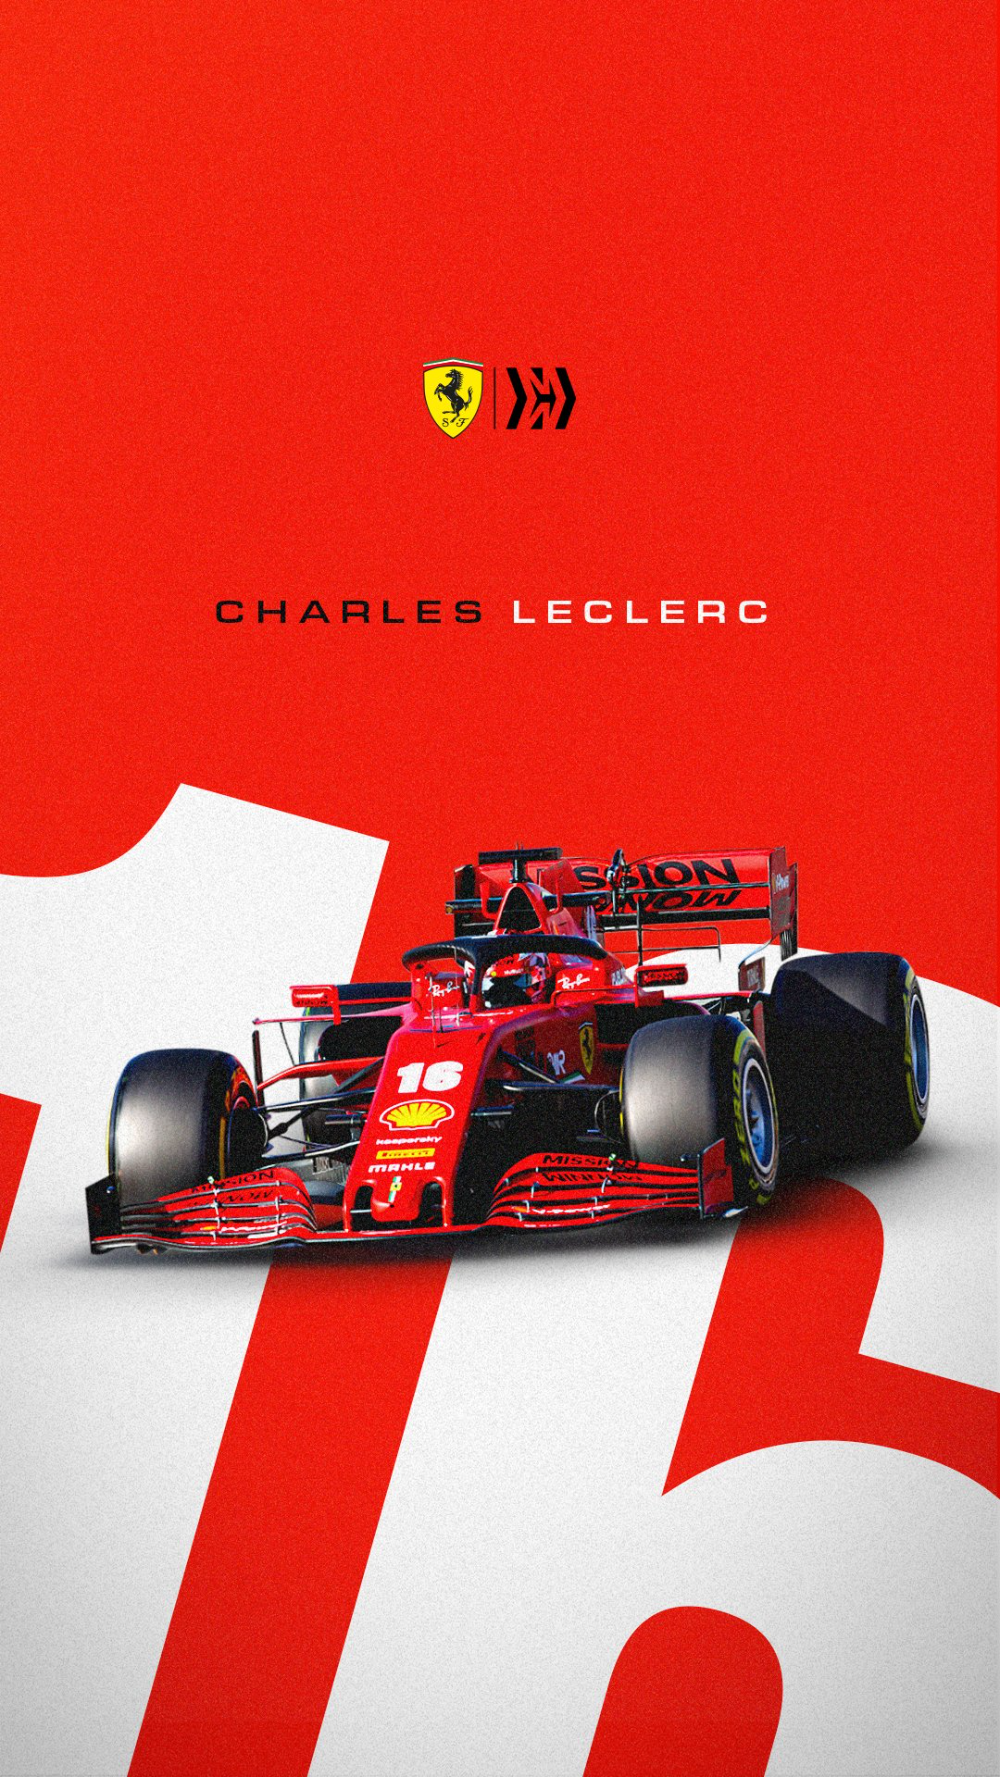 Scuderia Ferrari on Twitter. Ferrari, Ferrari poster, Formula 1 car